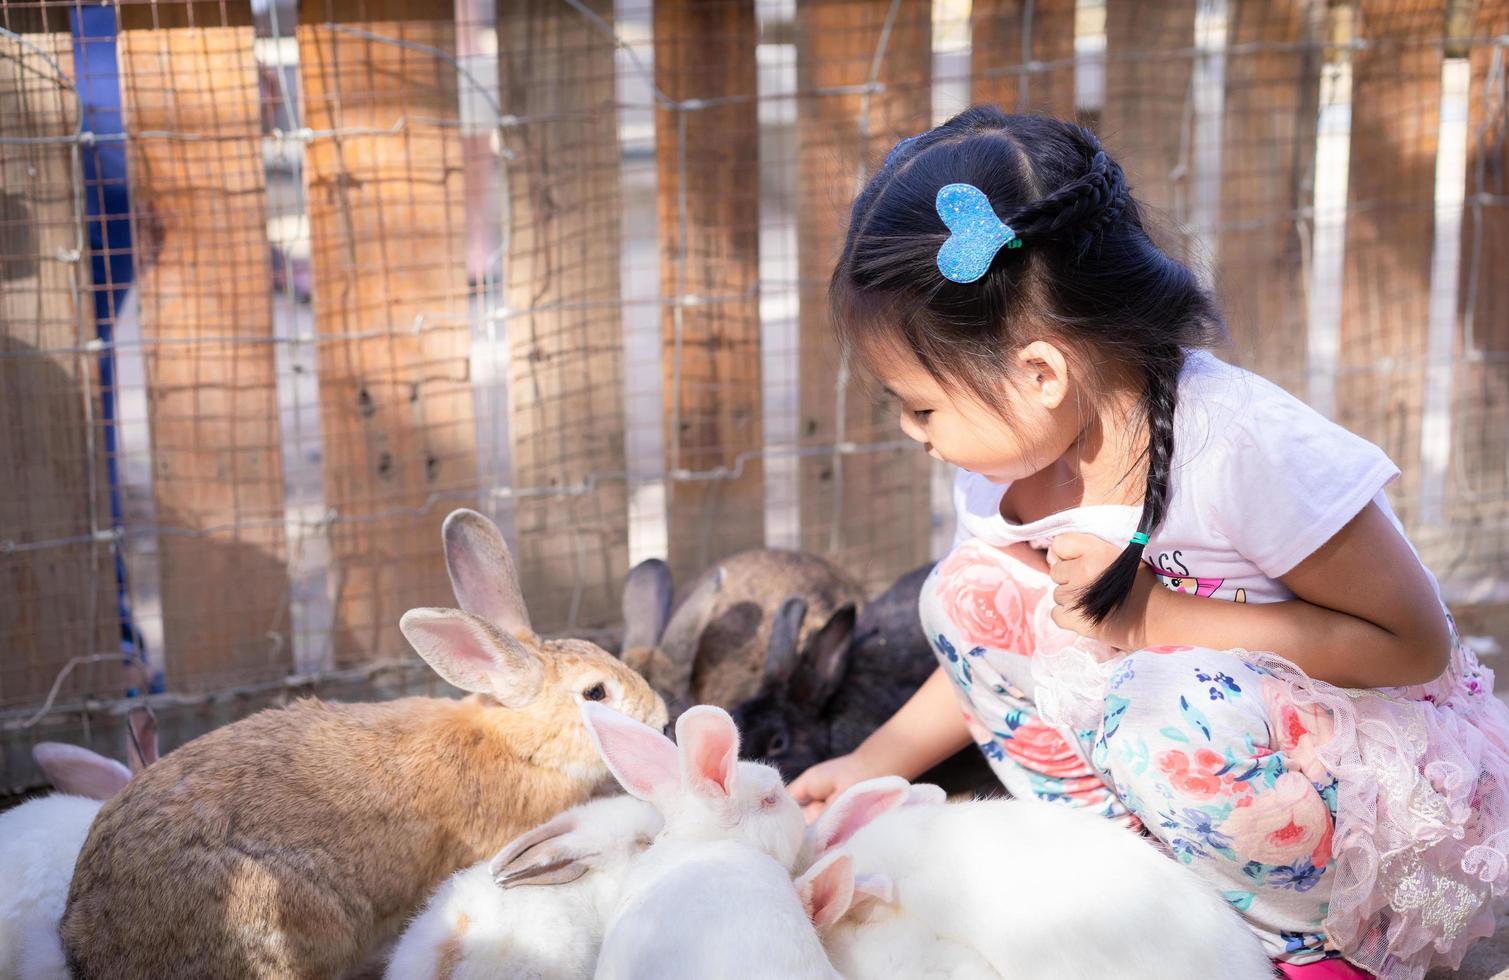 jong Aziatisch meisje dat met landbouwbedrijfkonijnen socialiseert foto